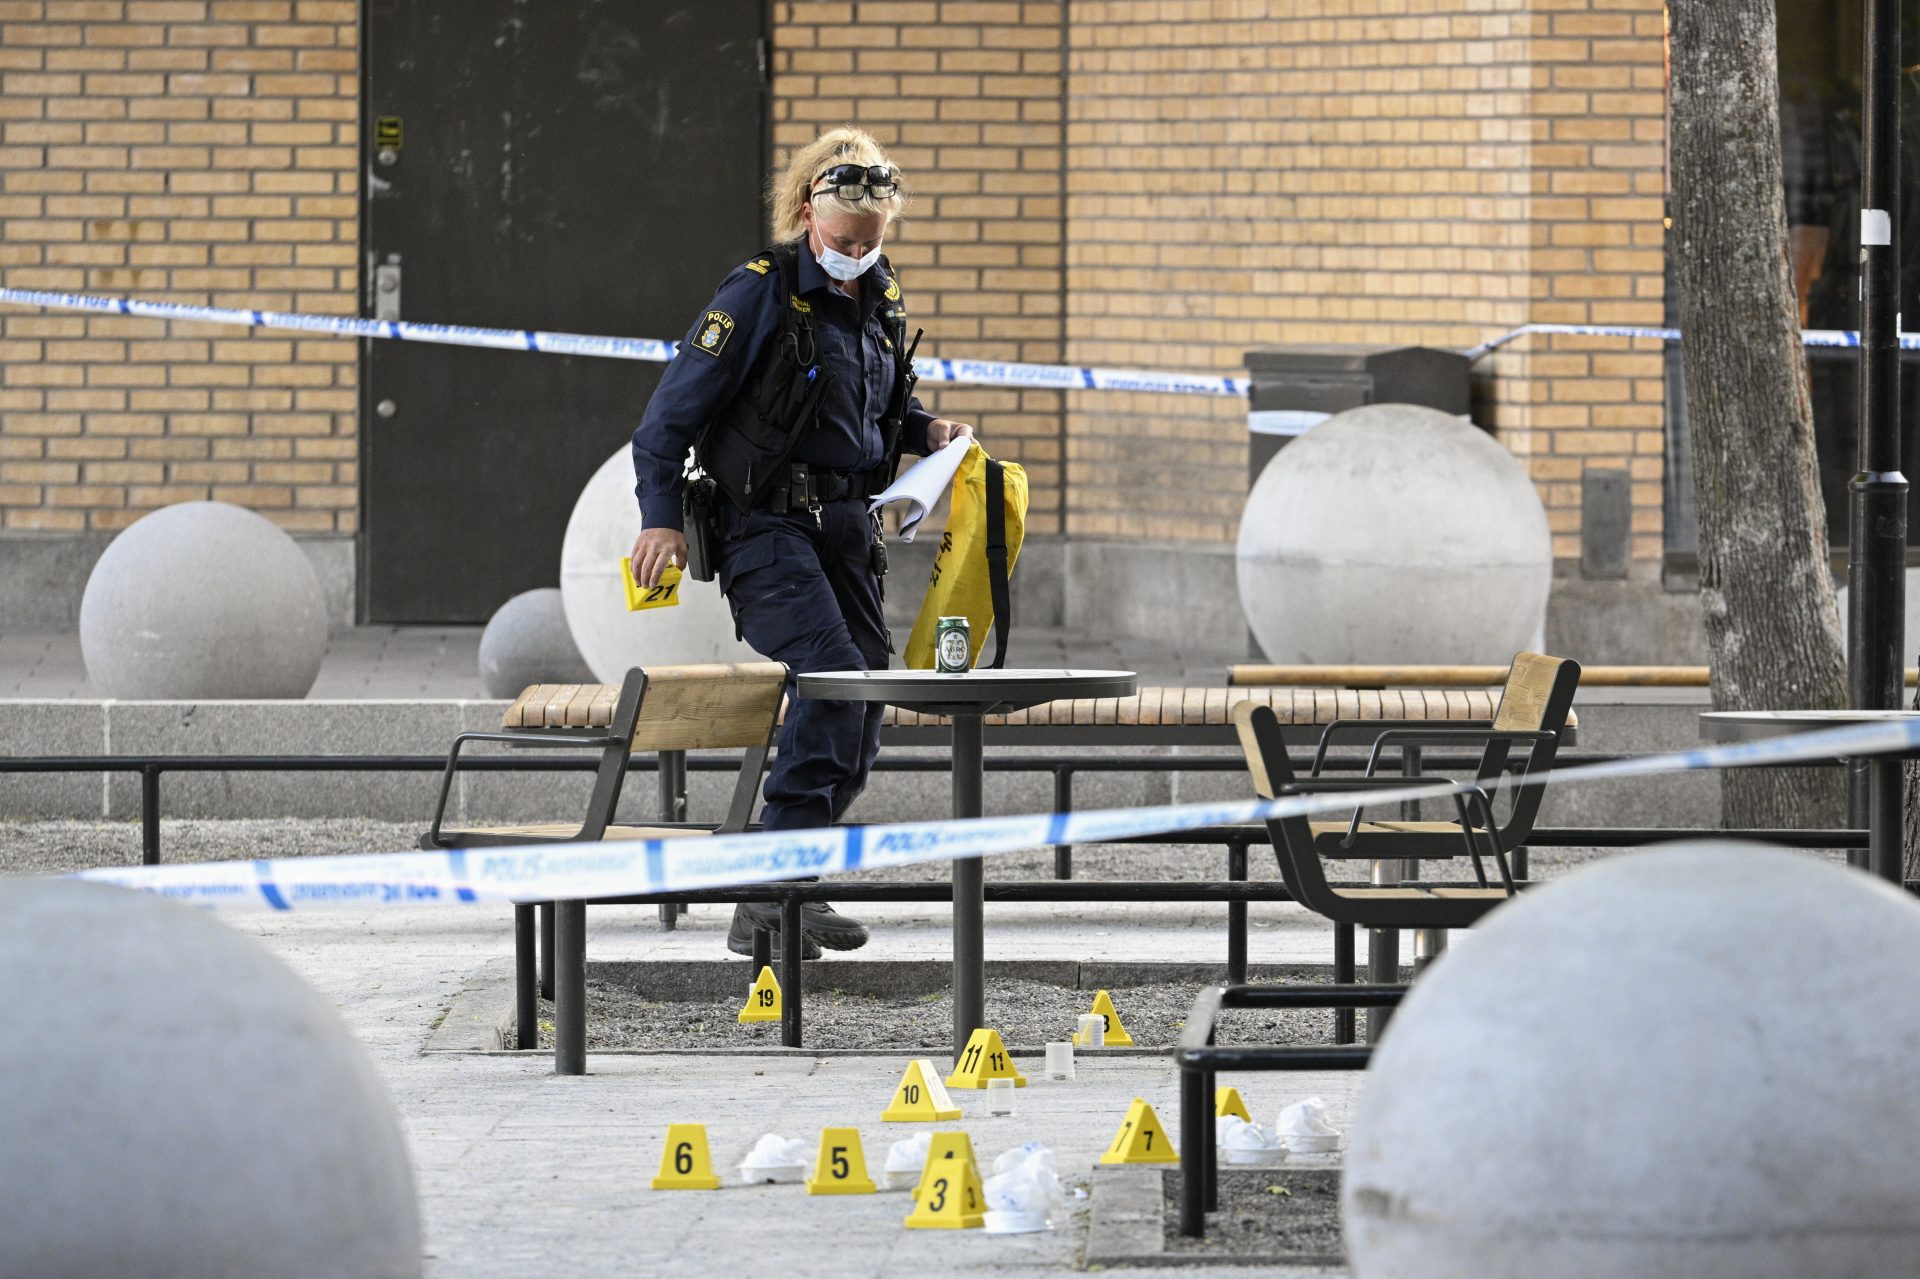 Two teenagers die in a shooting in Stockholm
